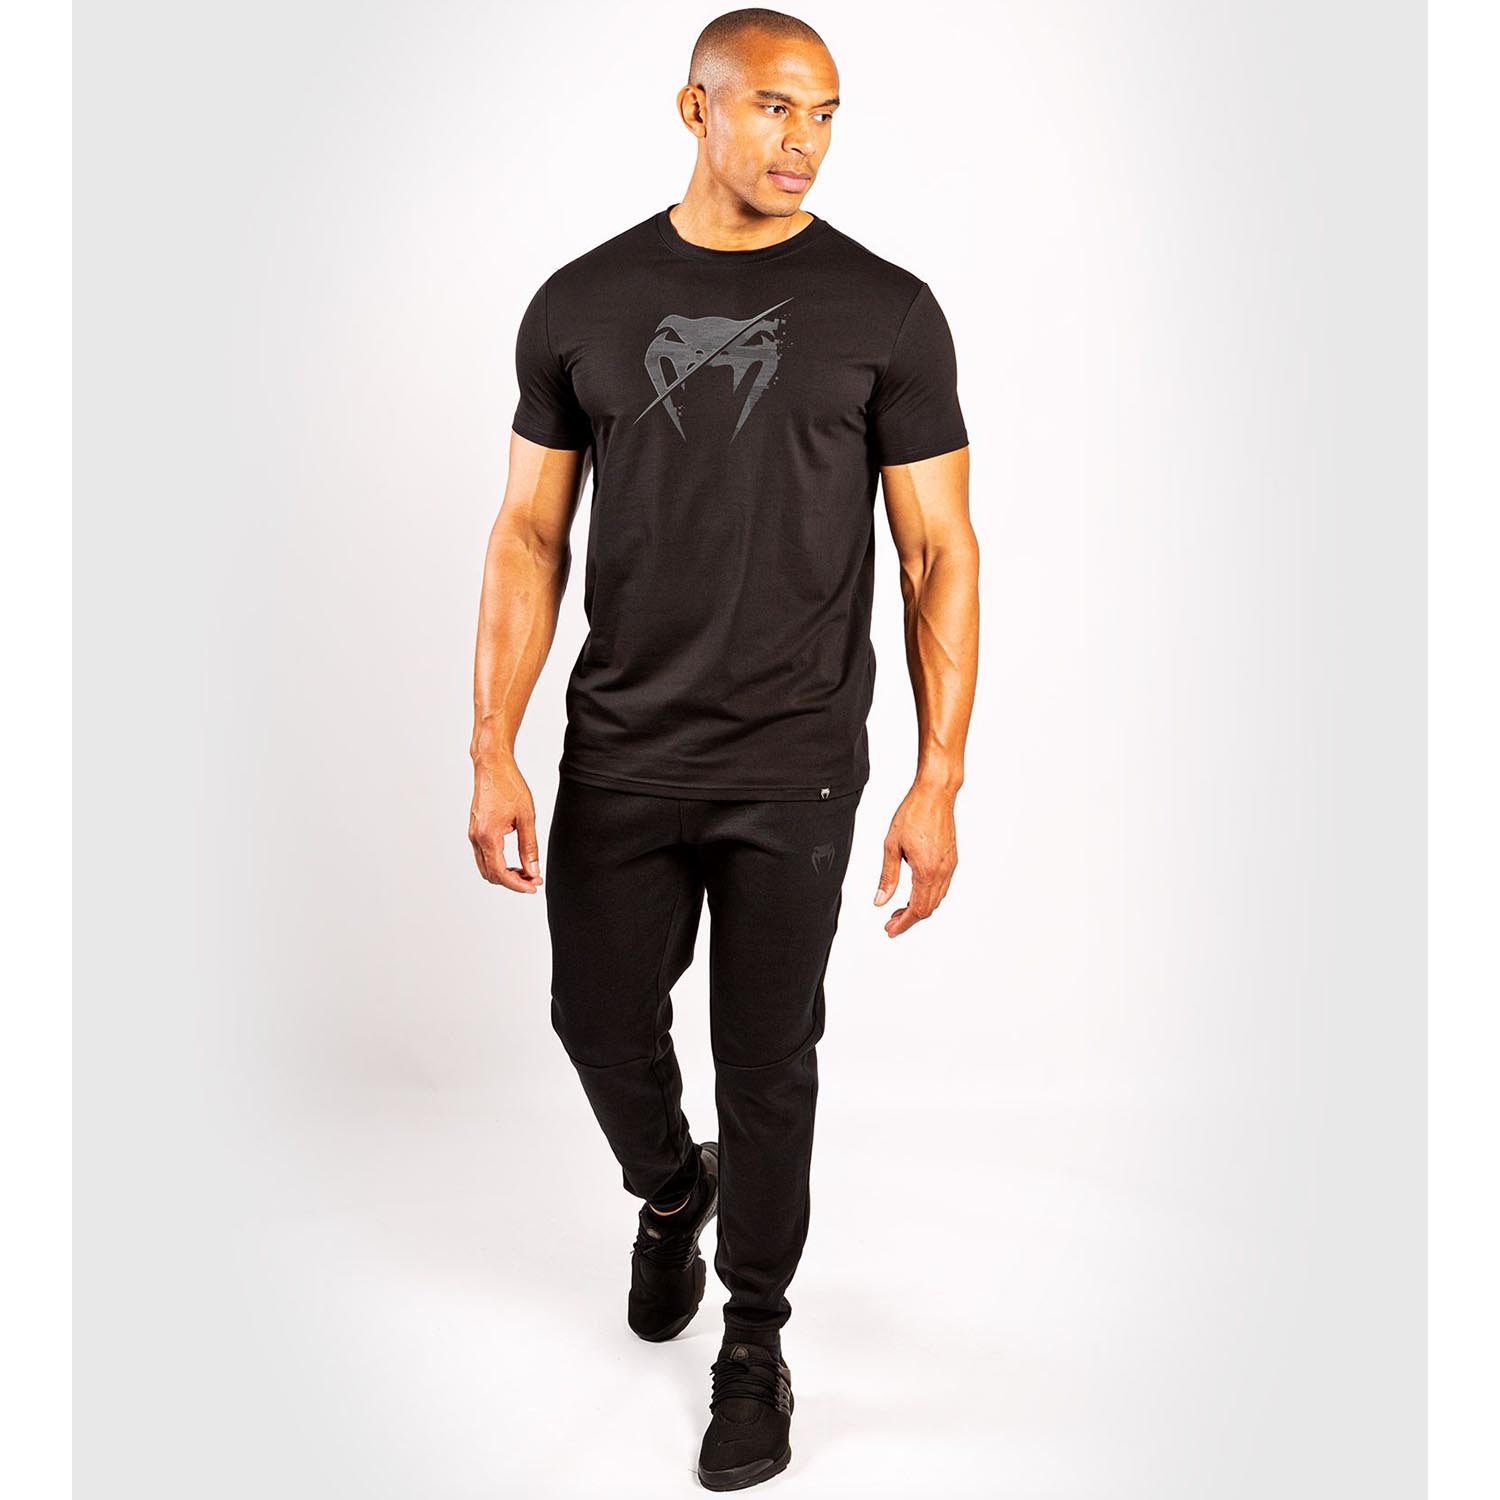 VENUM T-Shirt, Interference 3.0, schwarz, M